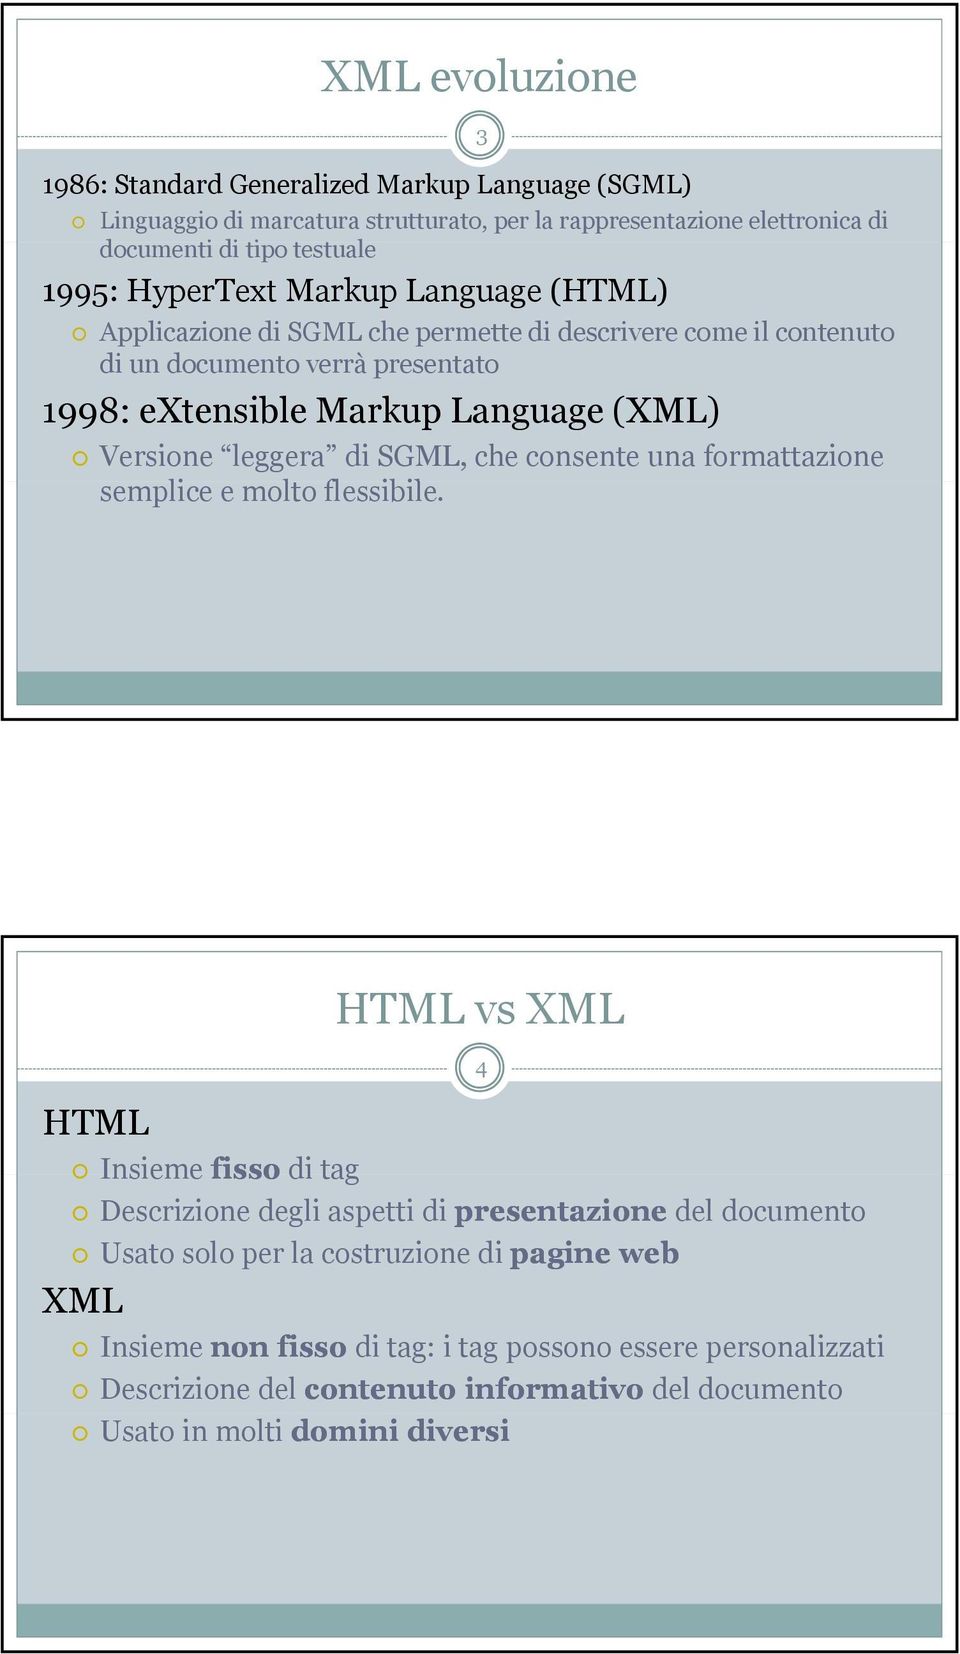 leggera di SGML, che consente una formattazione semplice e molto flessibile.